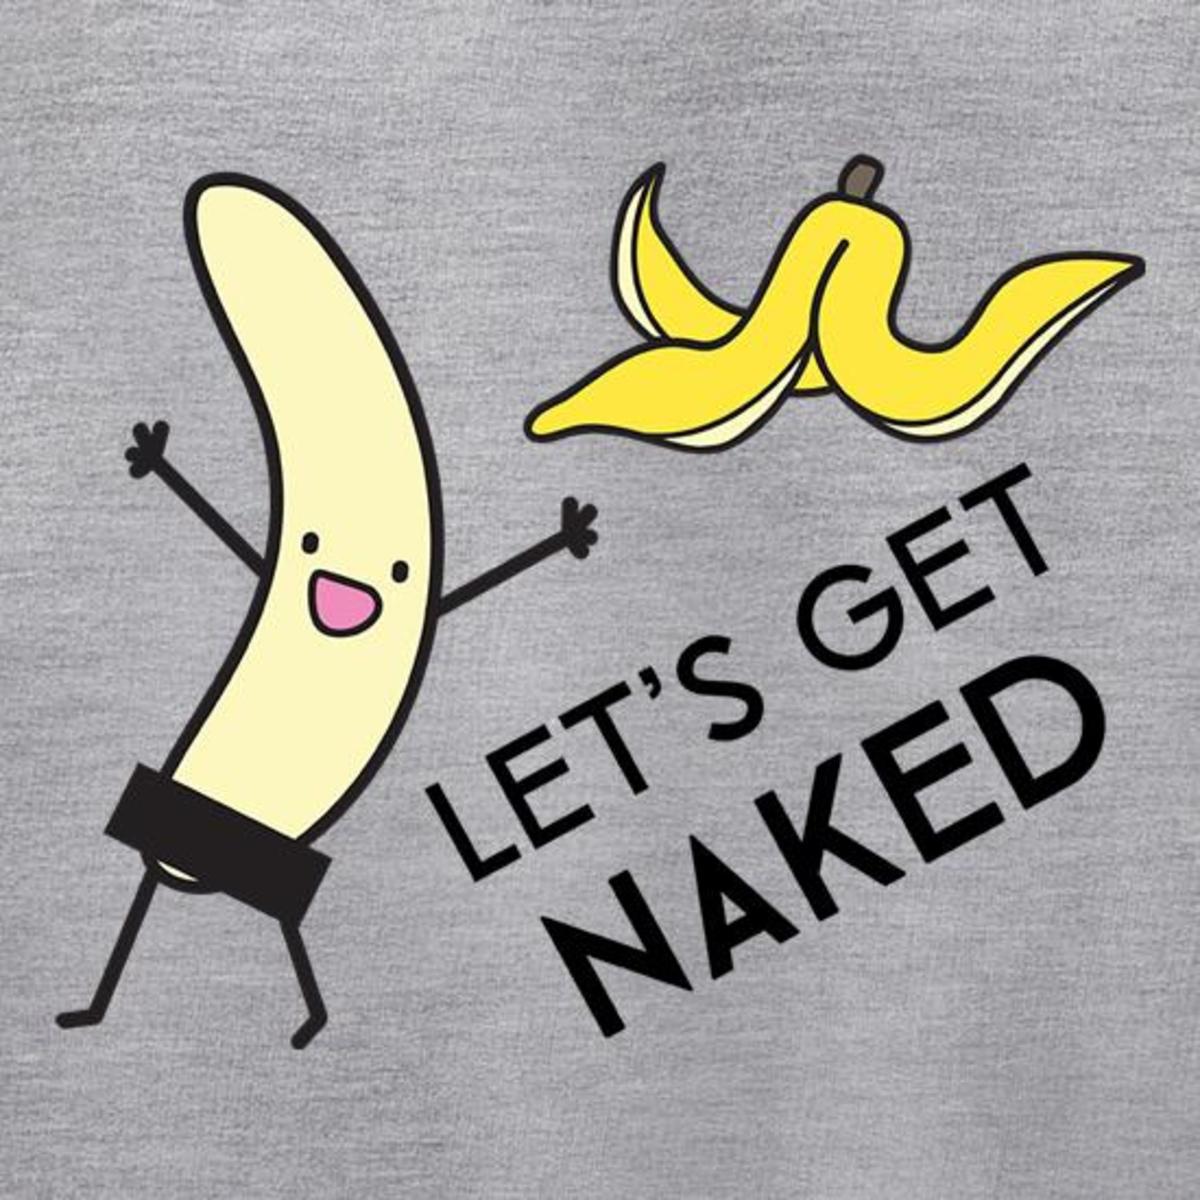 Let's Get Naked!